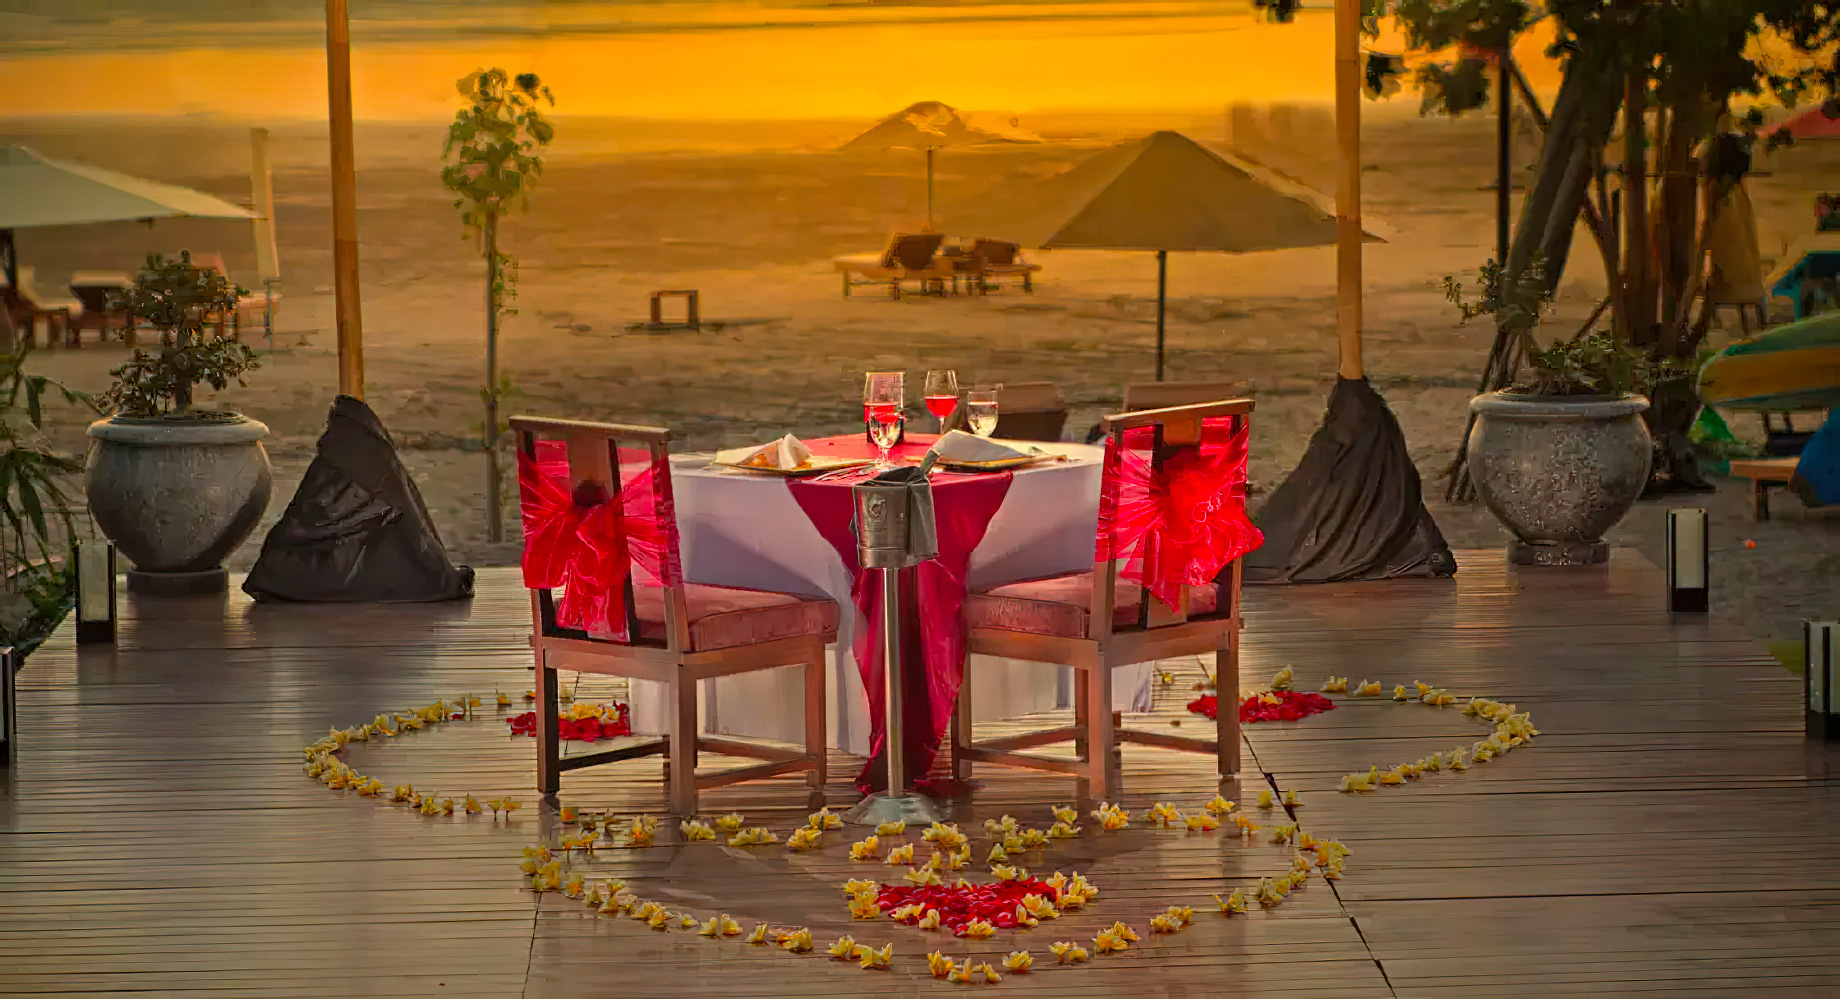 Anantara Seminyak Bali Resort – Bali, Indonesia – Beachfront Private Dining Sunset View